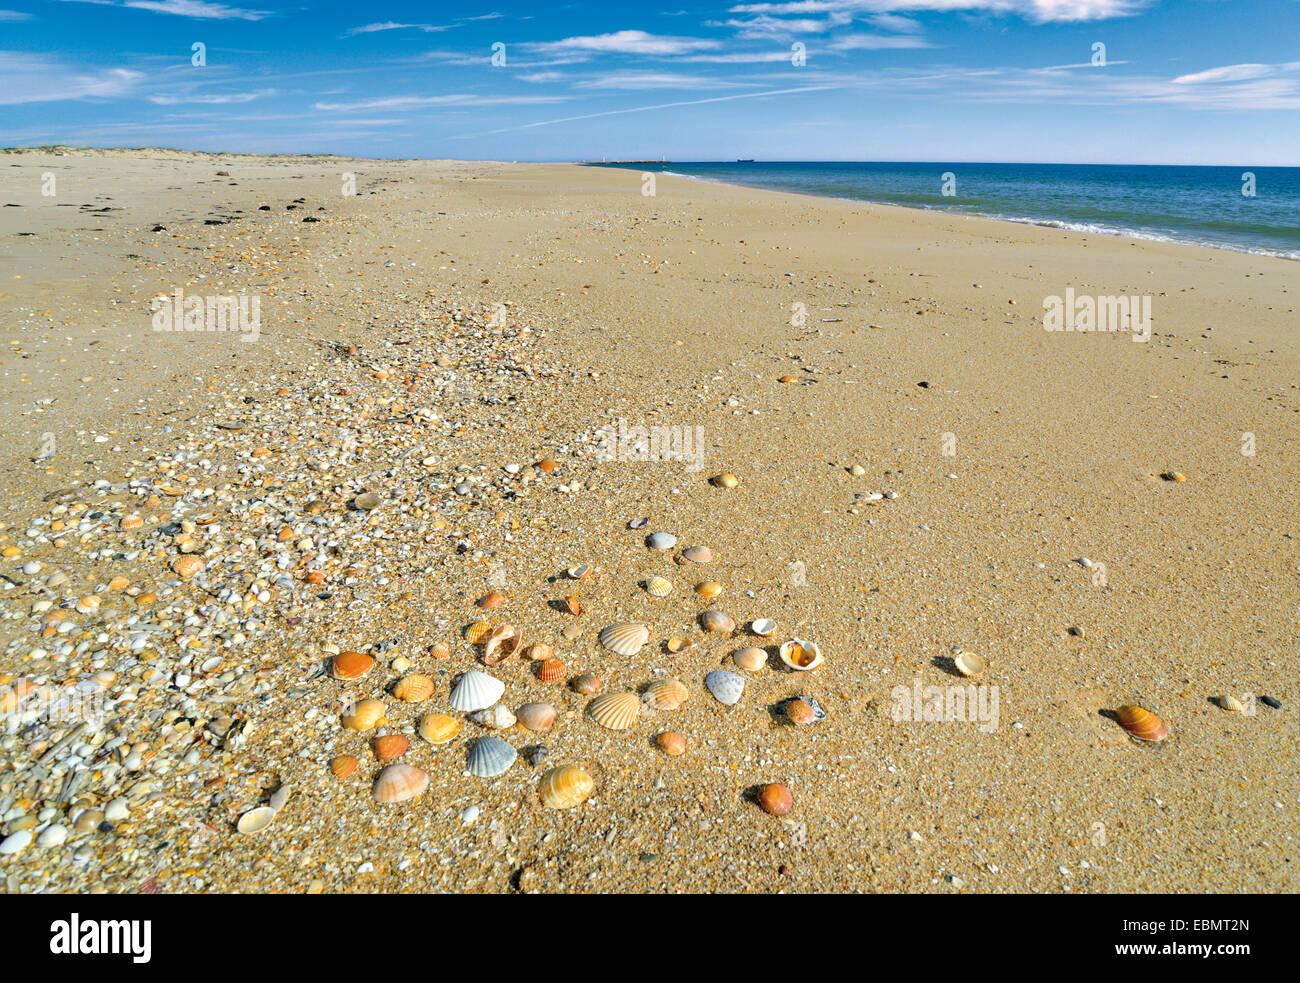 Portugal, Algarve. Sea shells at beach Praia das Conchas at Ilha Deserta of Nature Park Ria Formosa in Faro Stock Photo